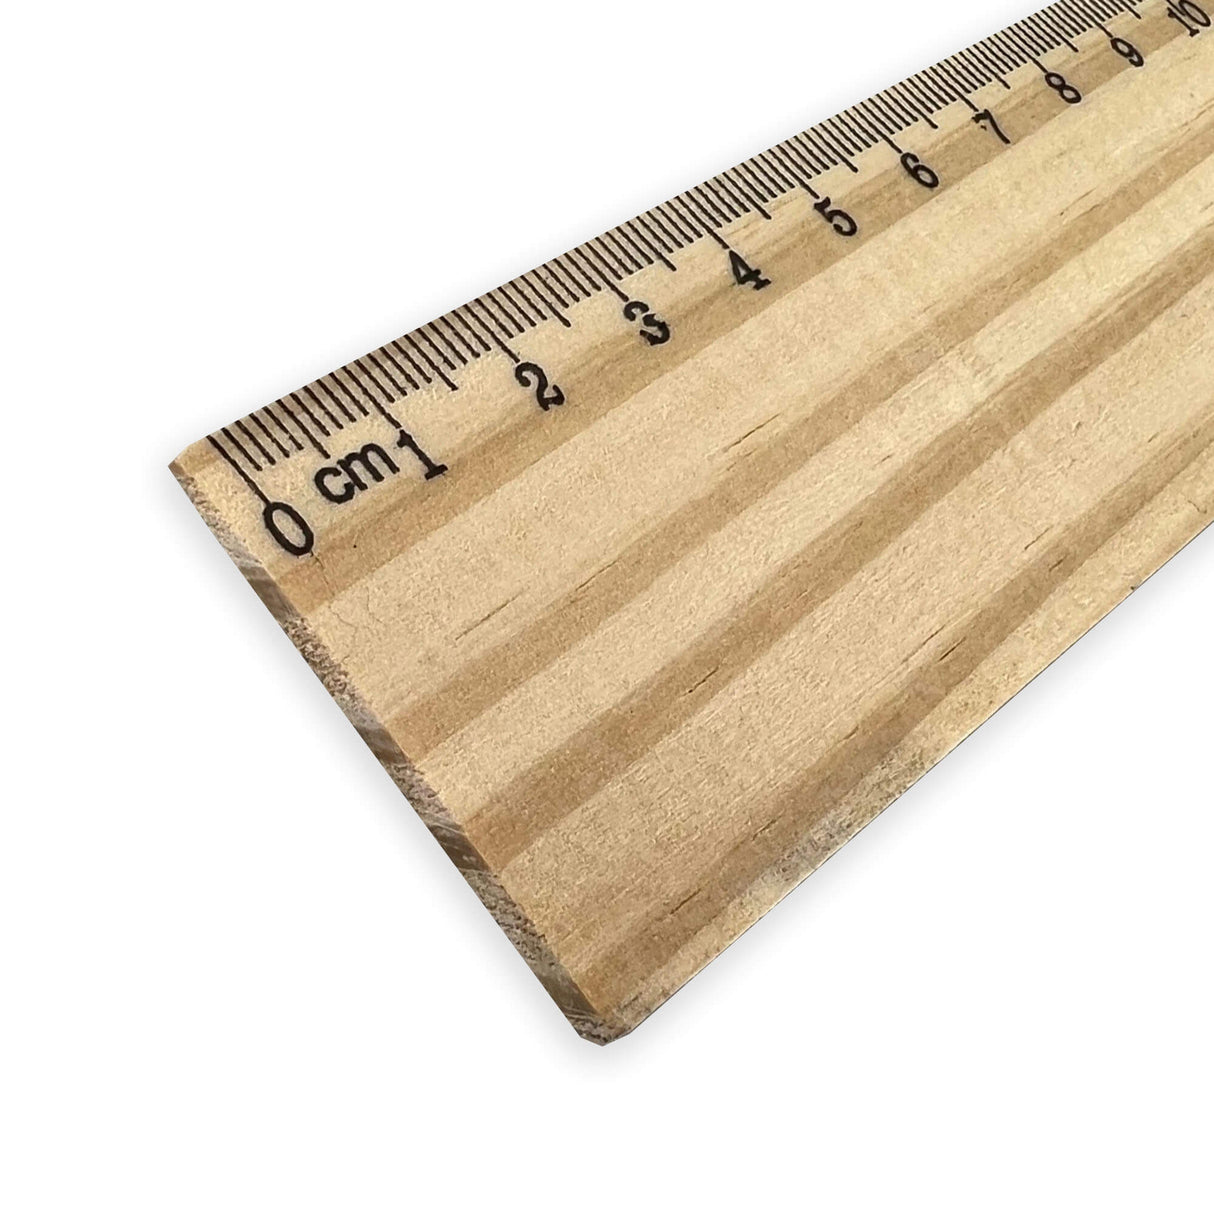 Wood Ruler 30cm - Printed